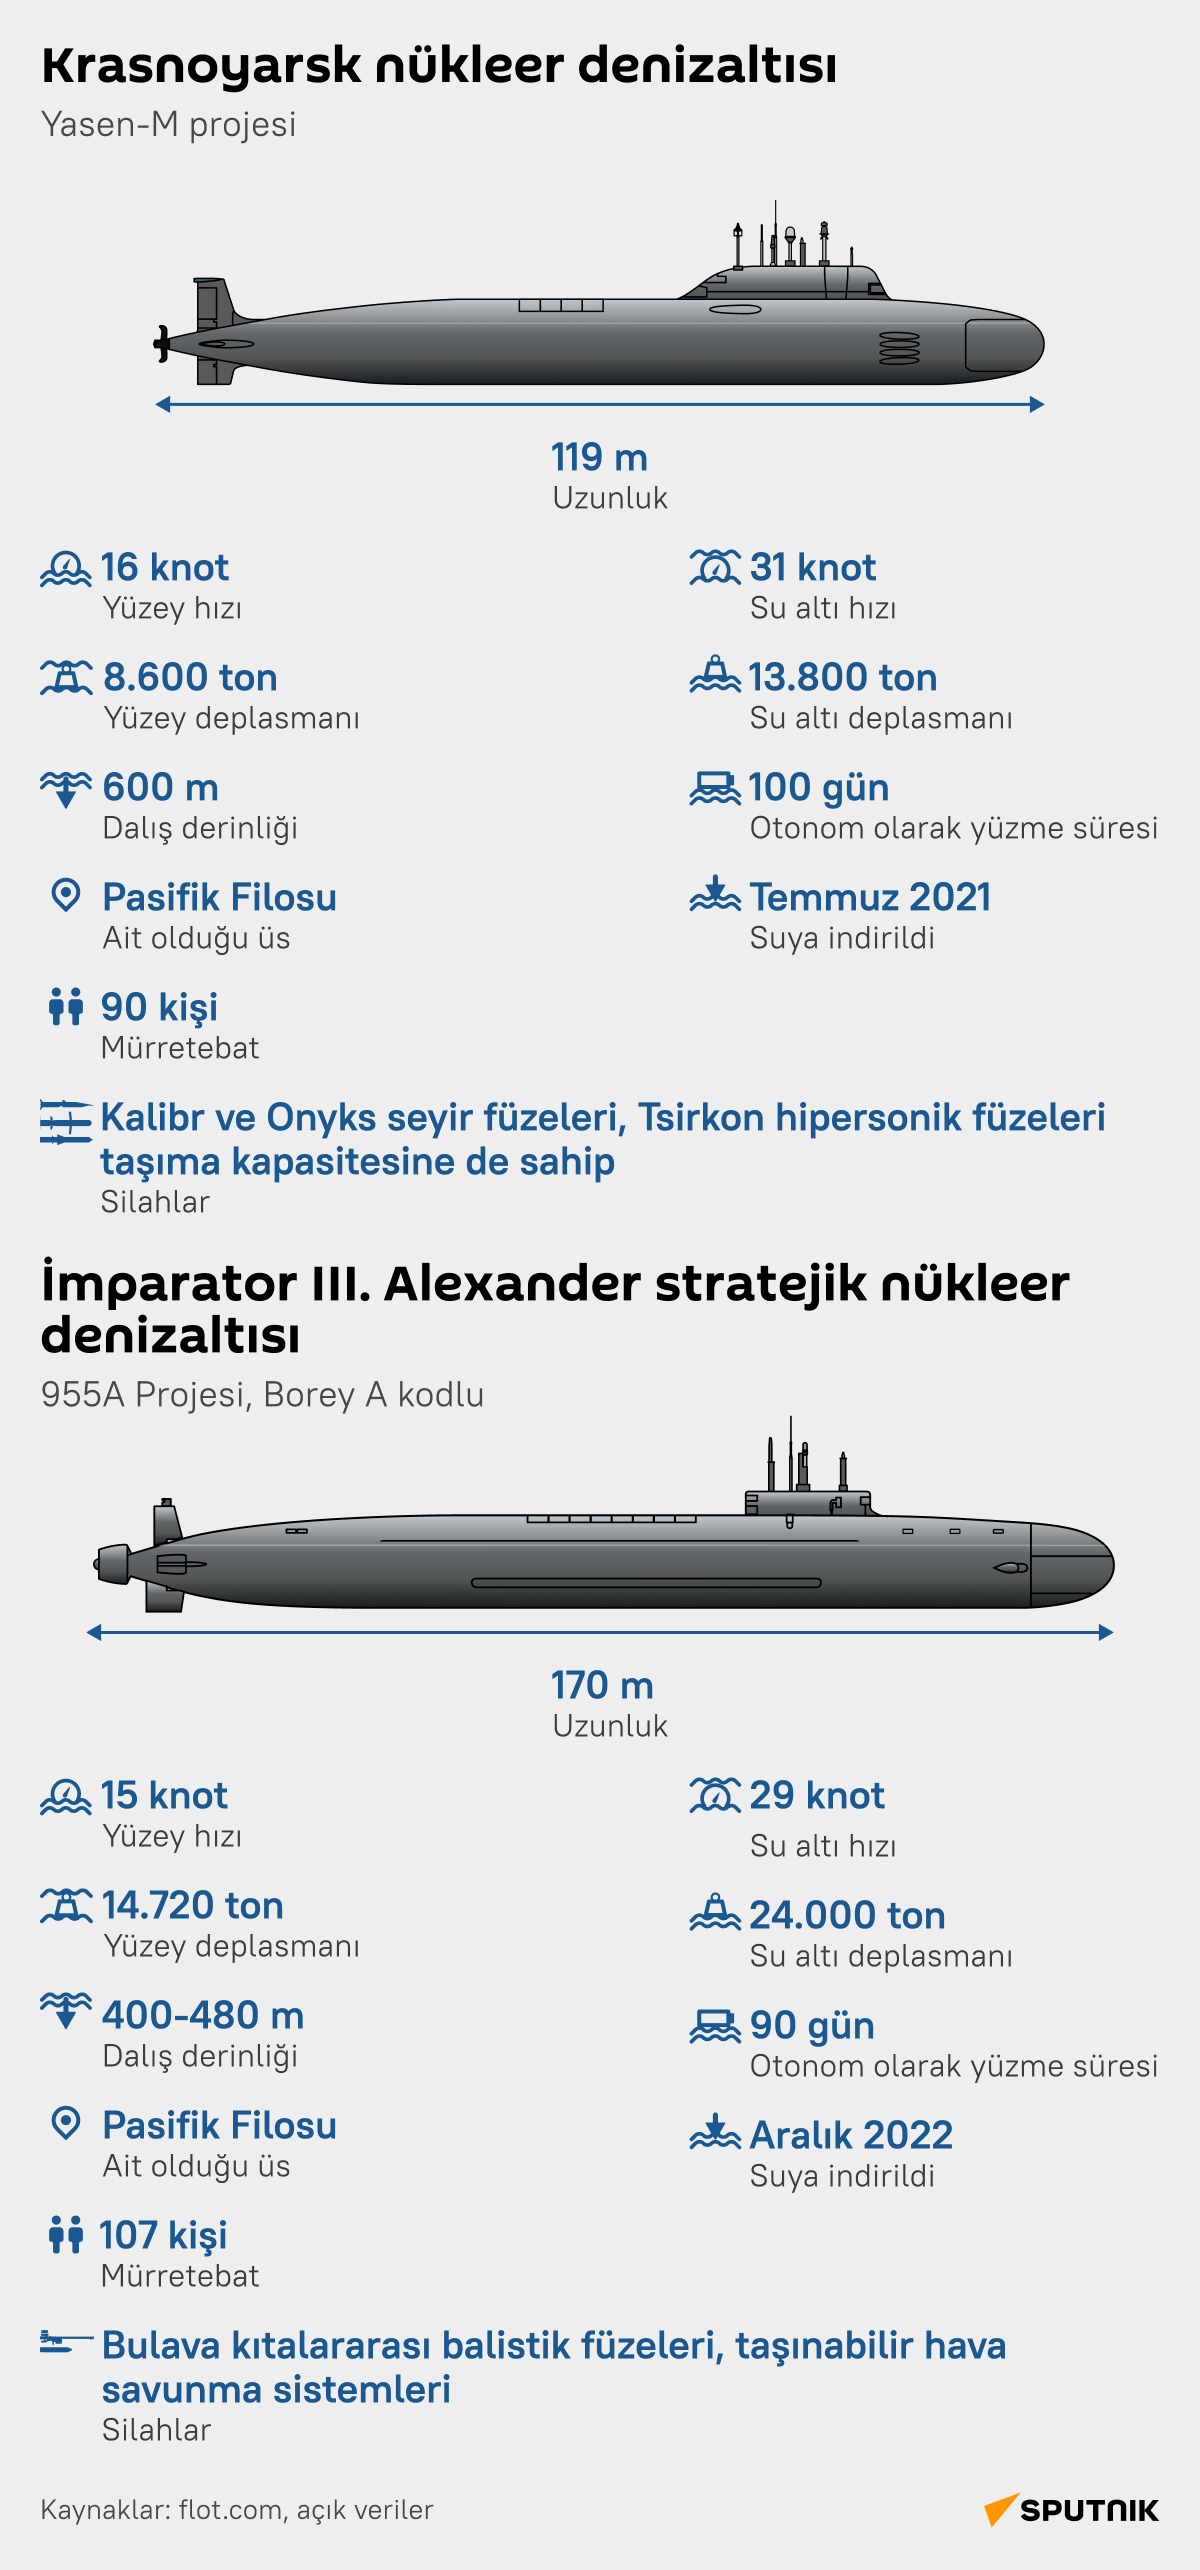 Rus Donanmasına katılan iki nükleer denizaltı: Krasnoyarsk ve İmparator III. Alexander   - Sputnik Türkiye